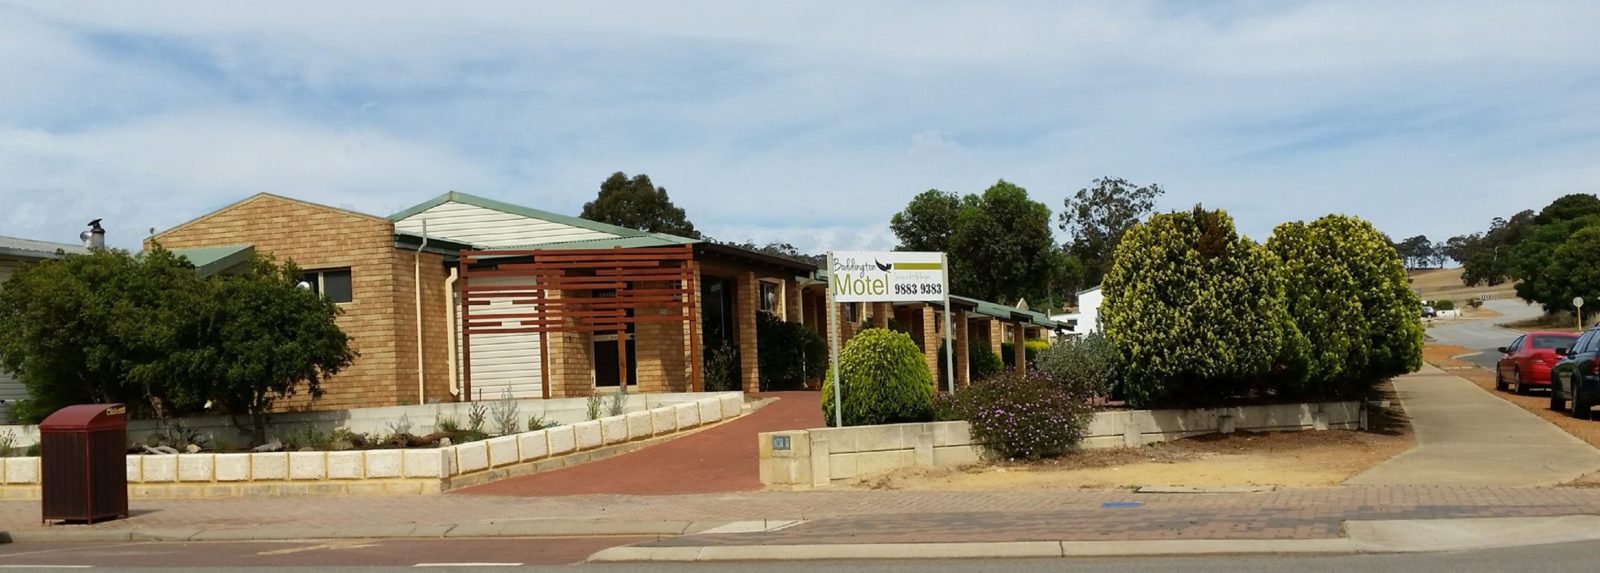 Boddington Motel, Boddington, Western Australia